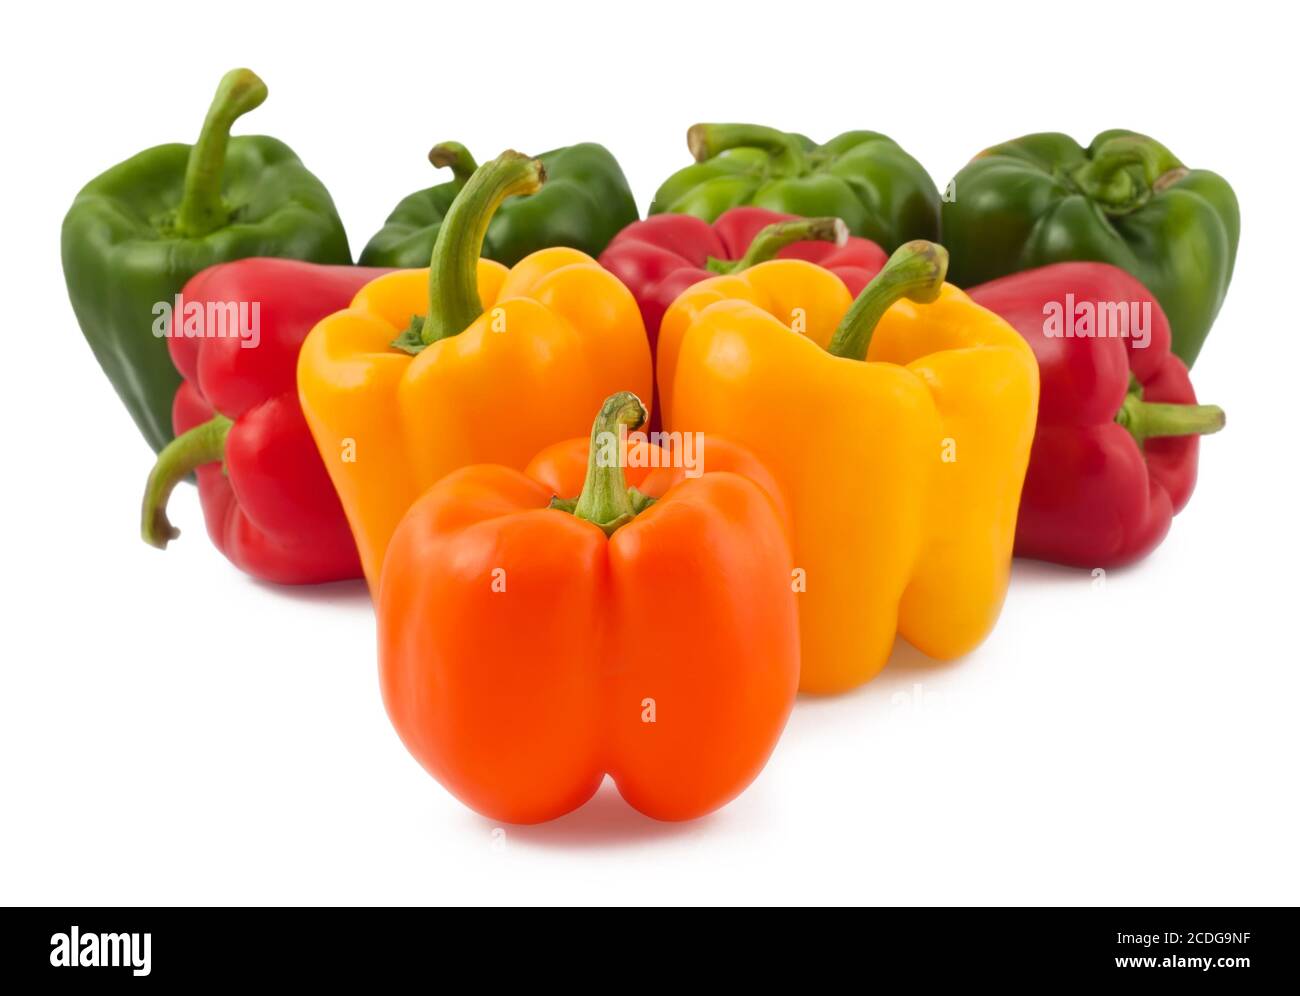 Peperoni verdi, gialli, arancioni e rossi Foto Stock